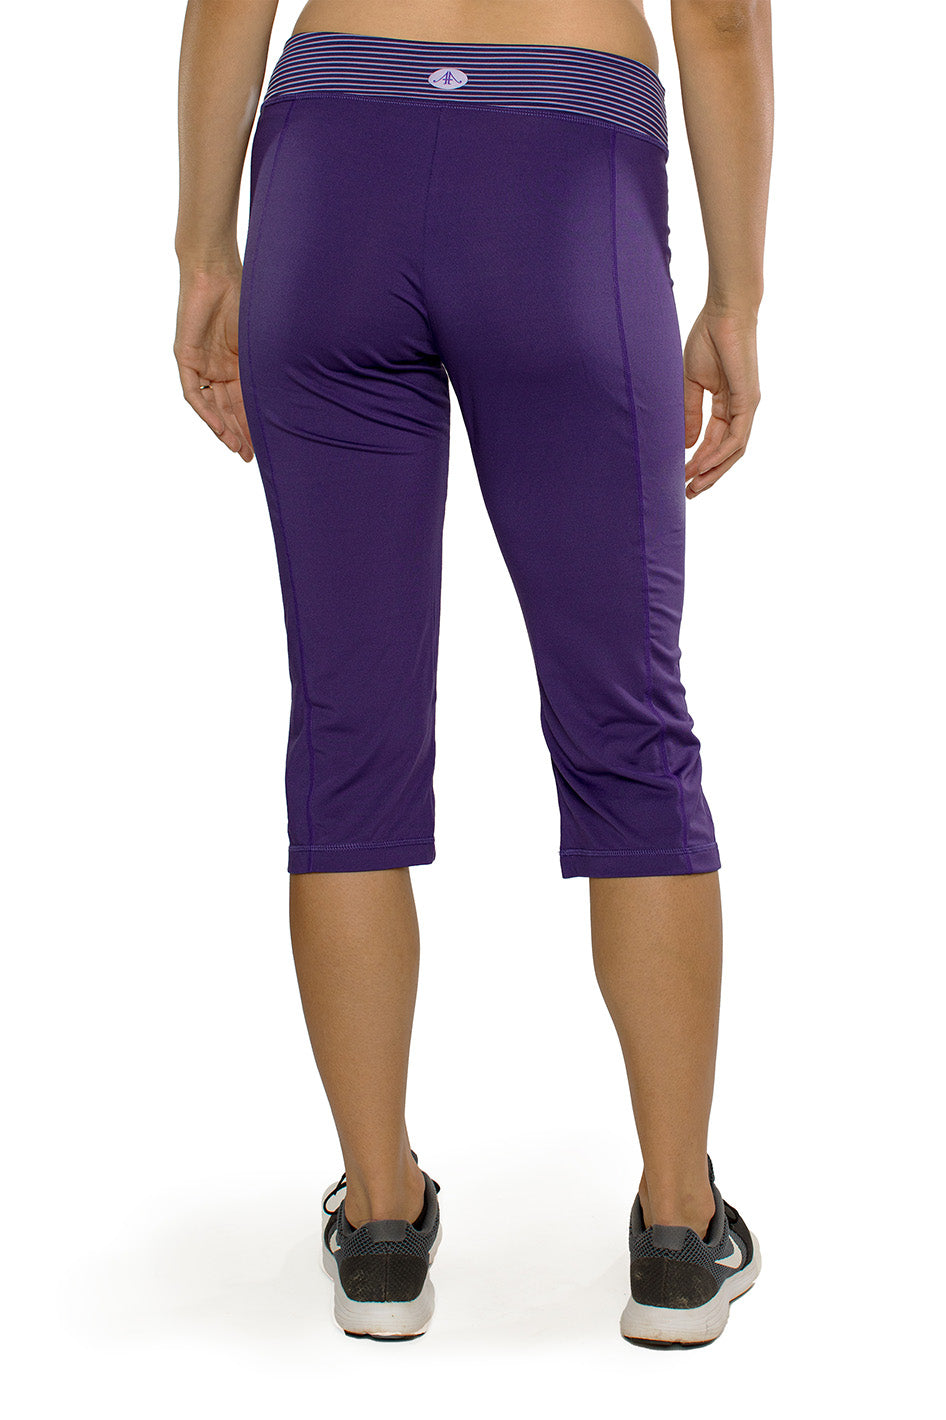 Triumph Capri Crop Pant, Women's Pants